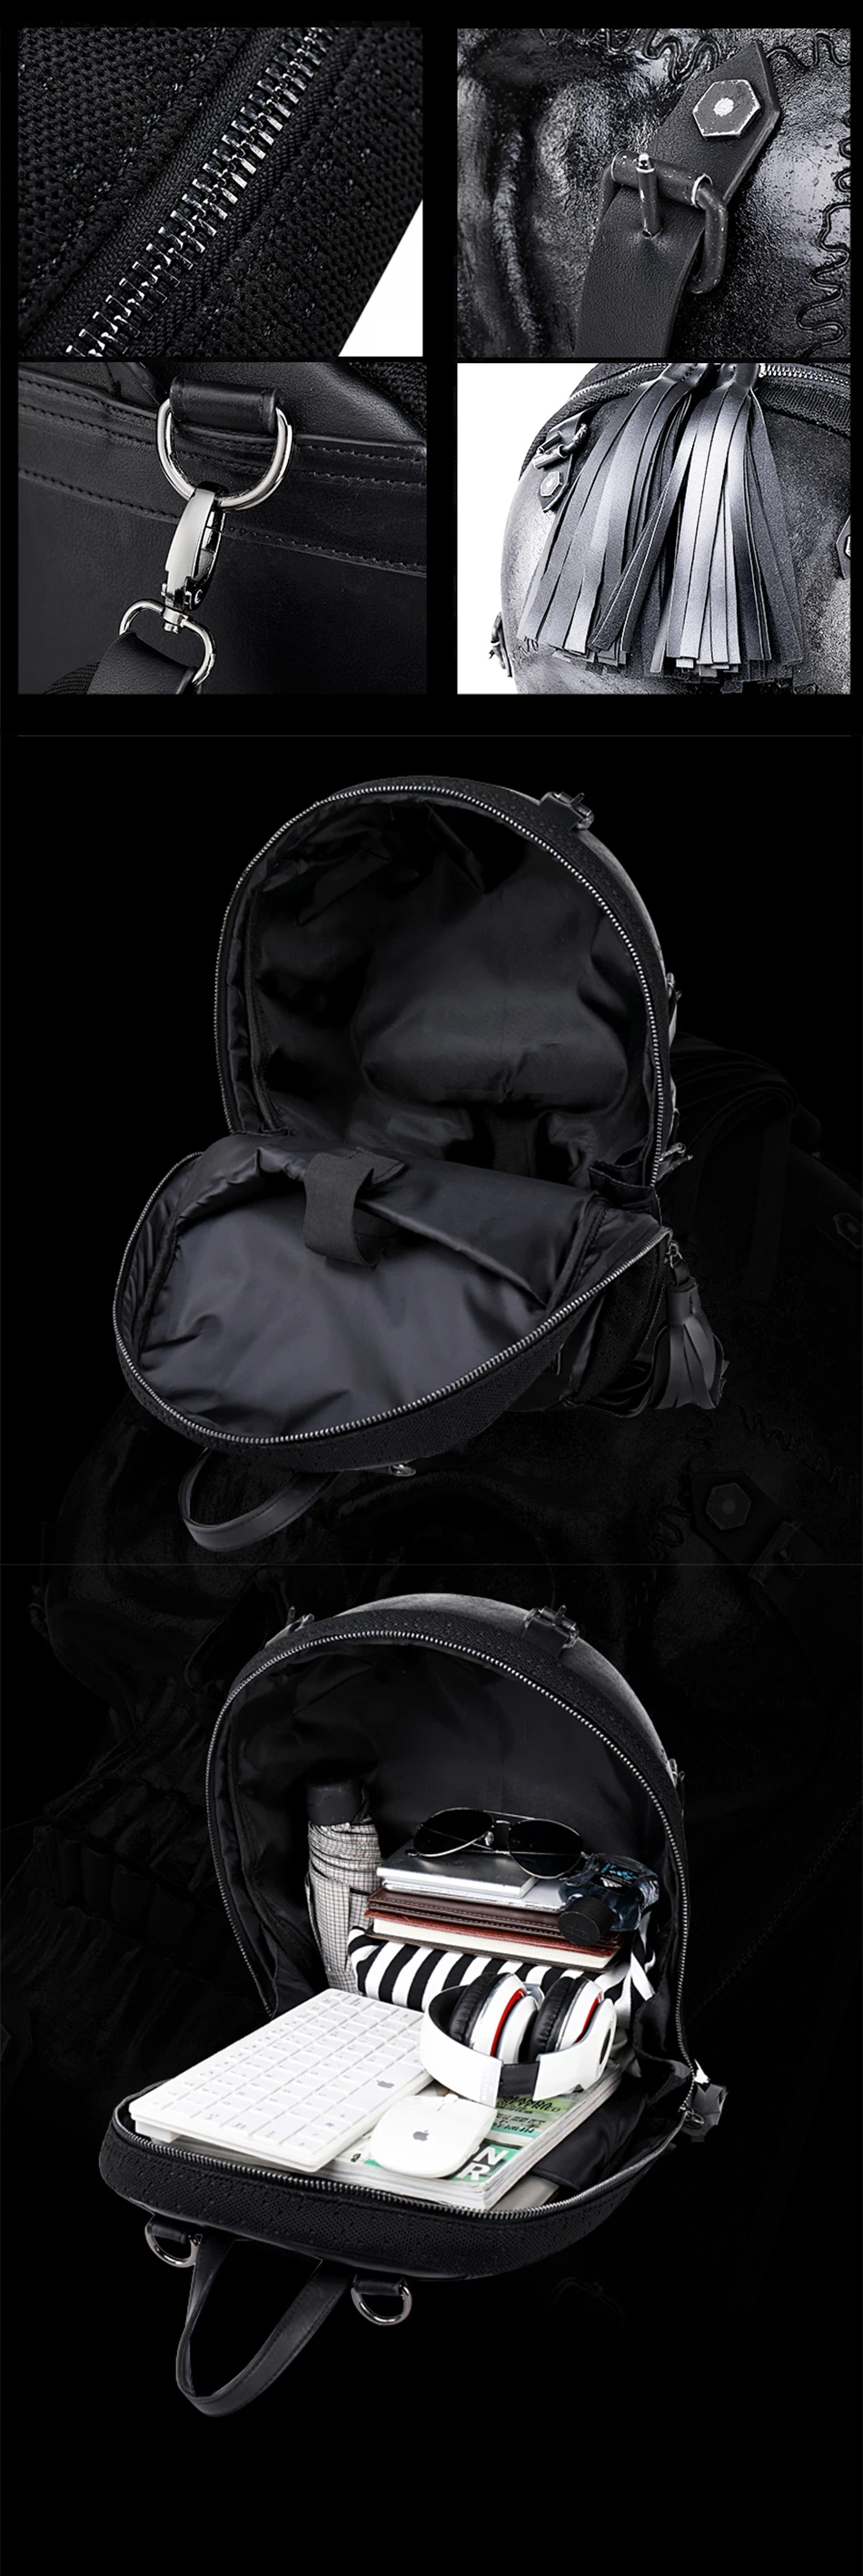 JIEZUOFANG персонализированные уличные крутой рок мужской рюкзак гримаса шаблон череп шаблон рюкзак забавная сумка на плечо пакет